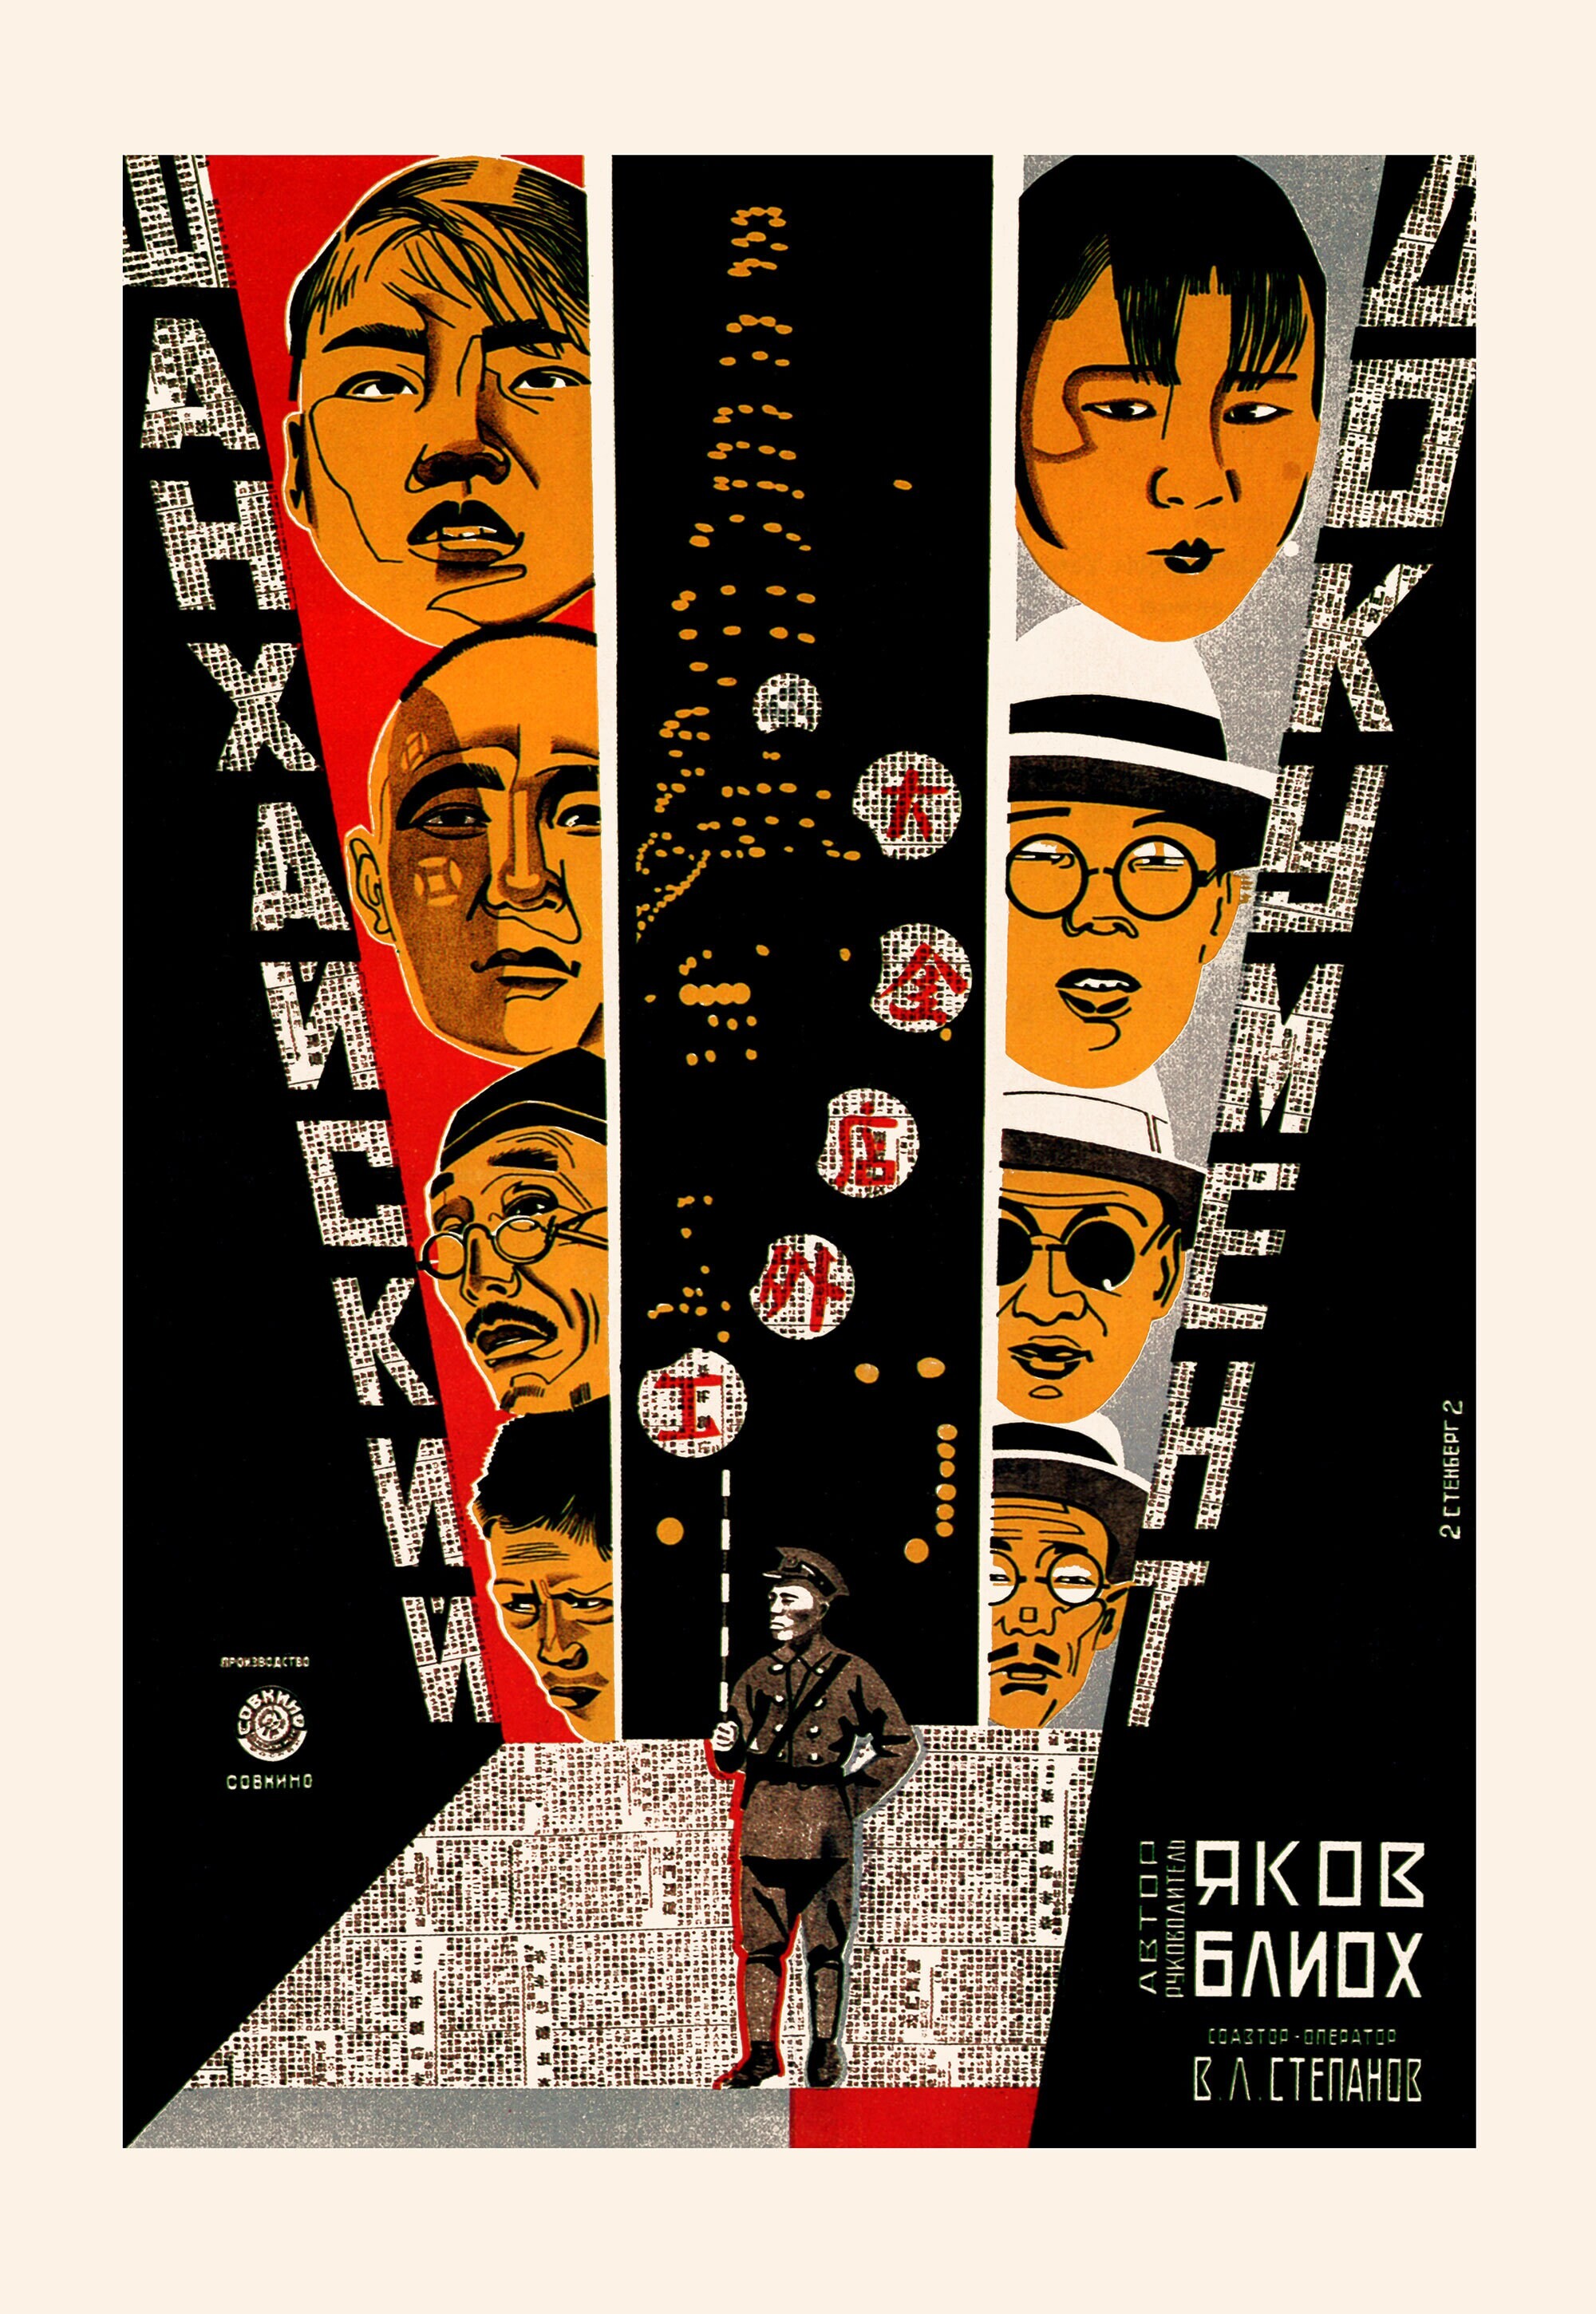 Шанхайский документ, 1928 год режиссёр Яков Блиох, плакат к фильму, авторы Георгий и Владимир Стенберги (авангардное советское искусство, 1920-е)